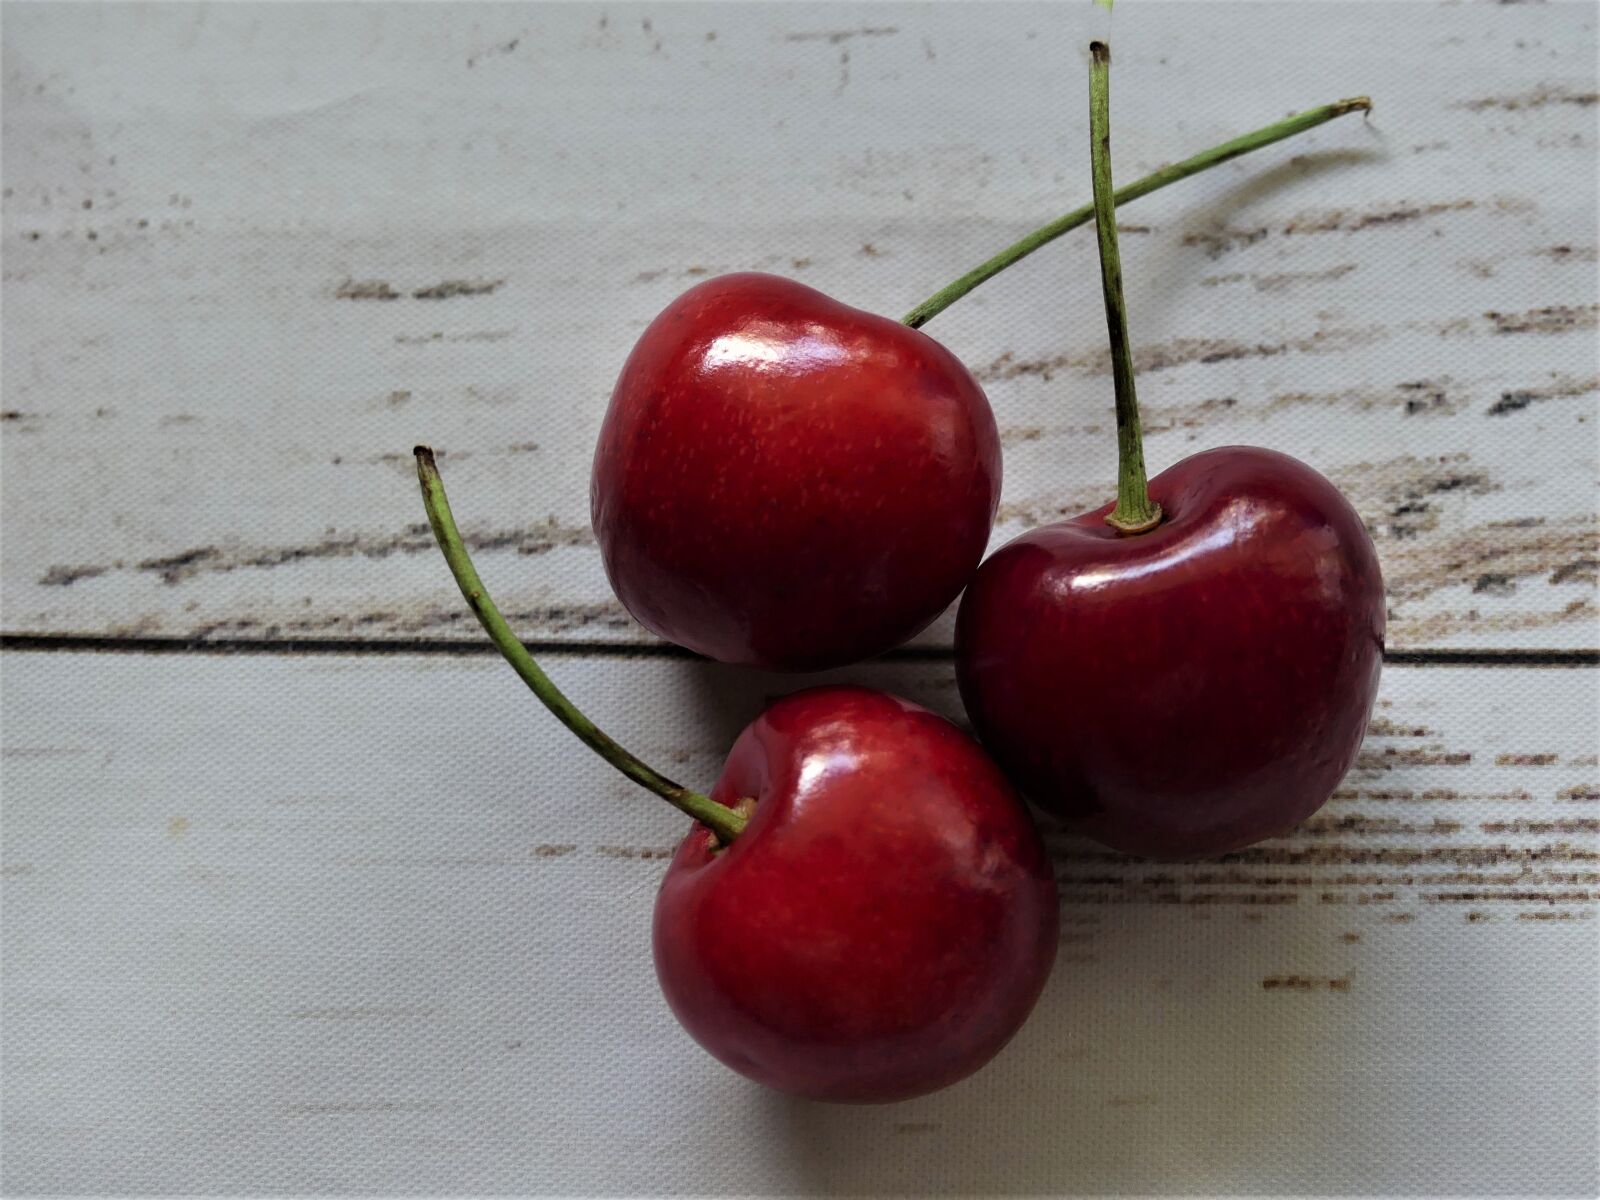 Panasonic Lumix DMC-FZ300 sample photo. Fruit, cherries, red photography